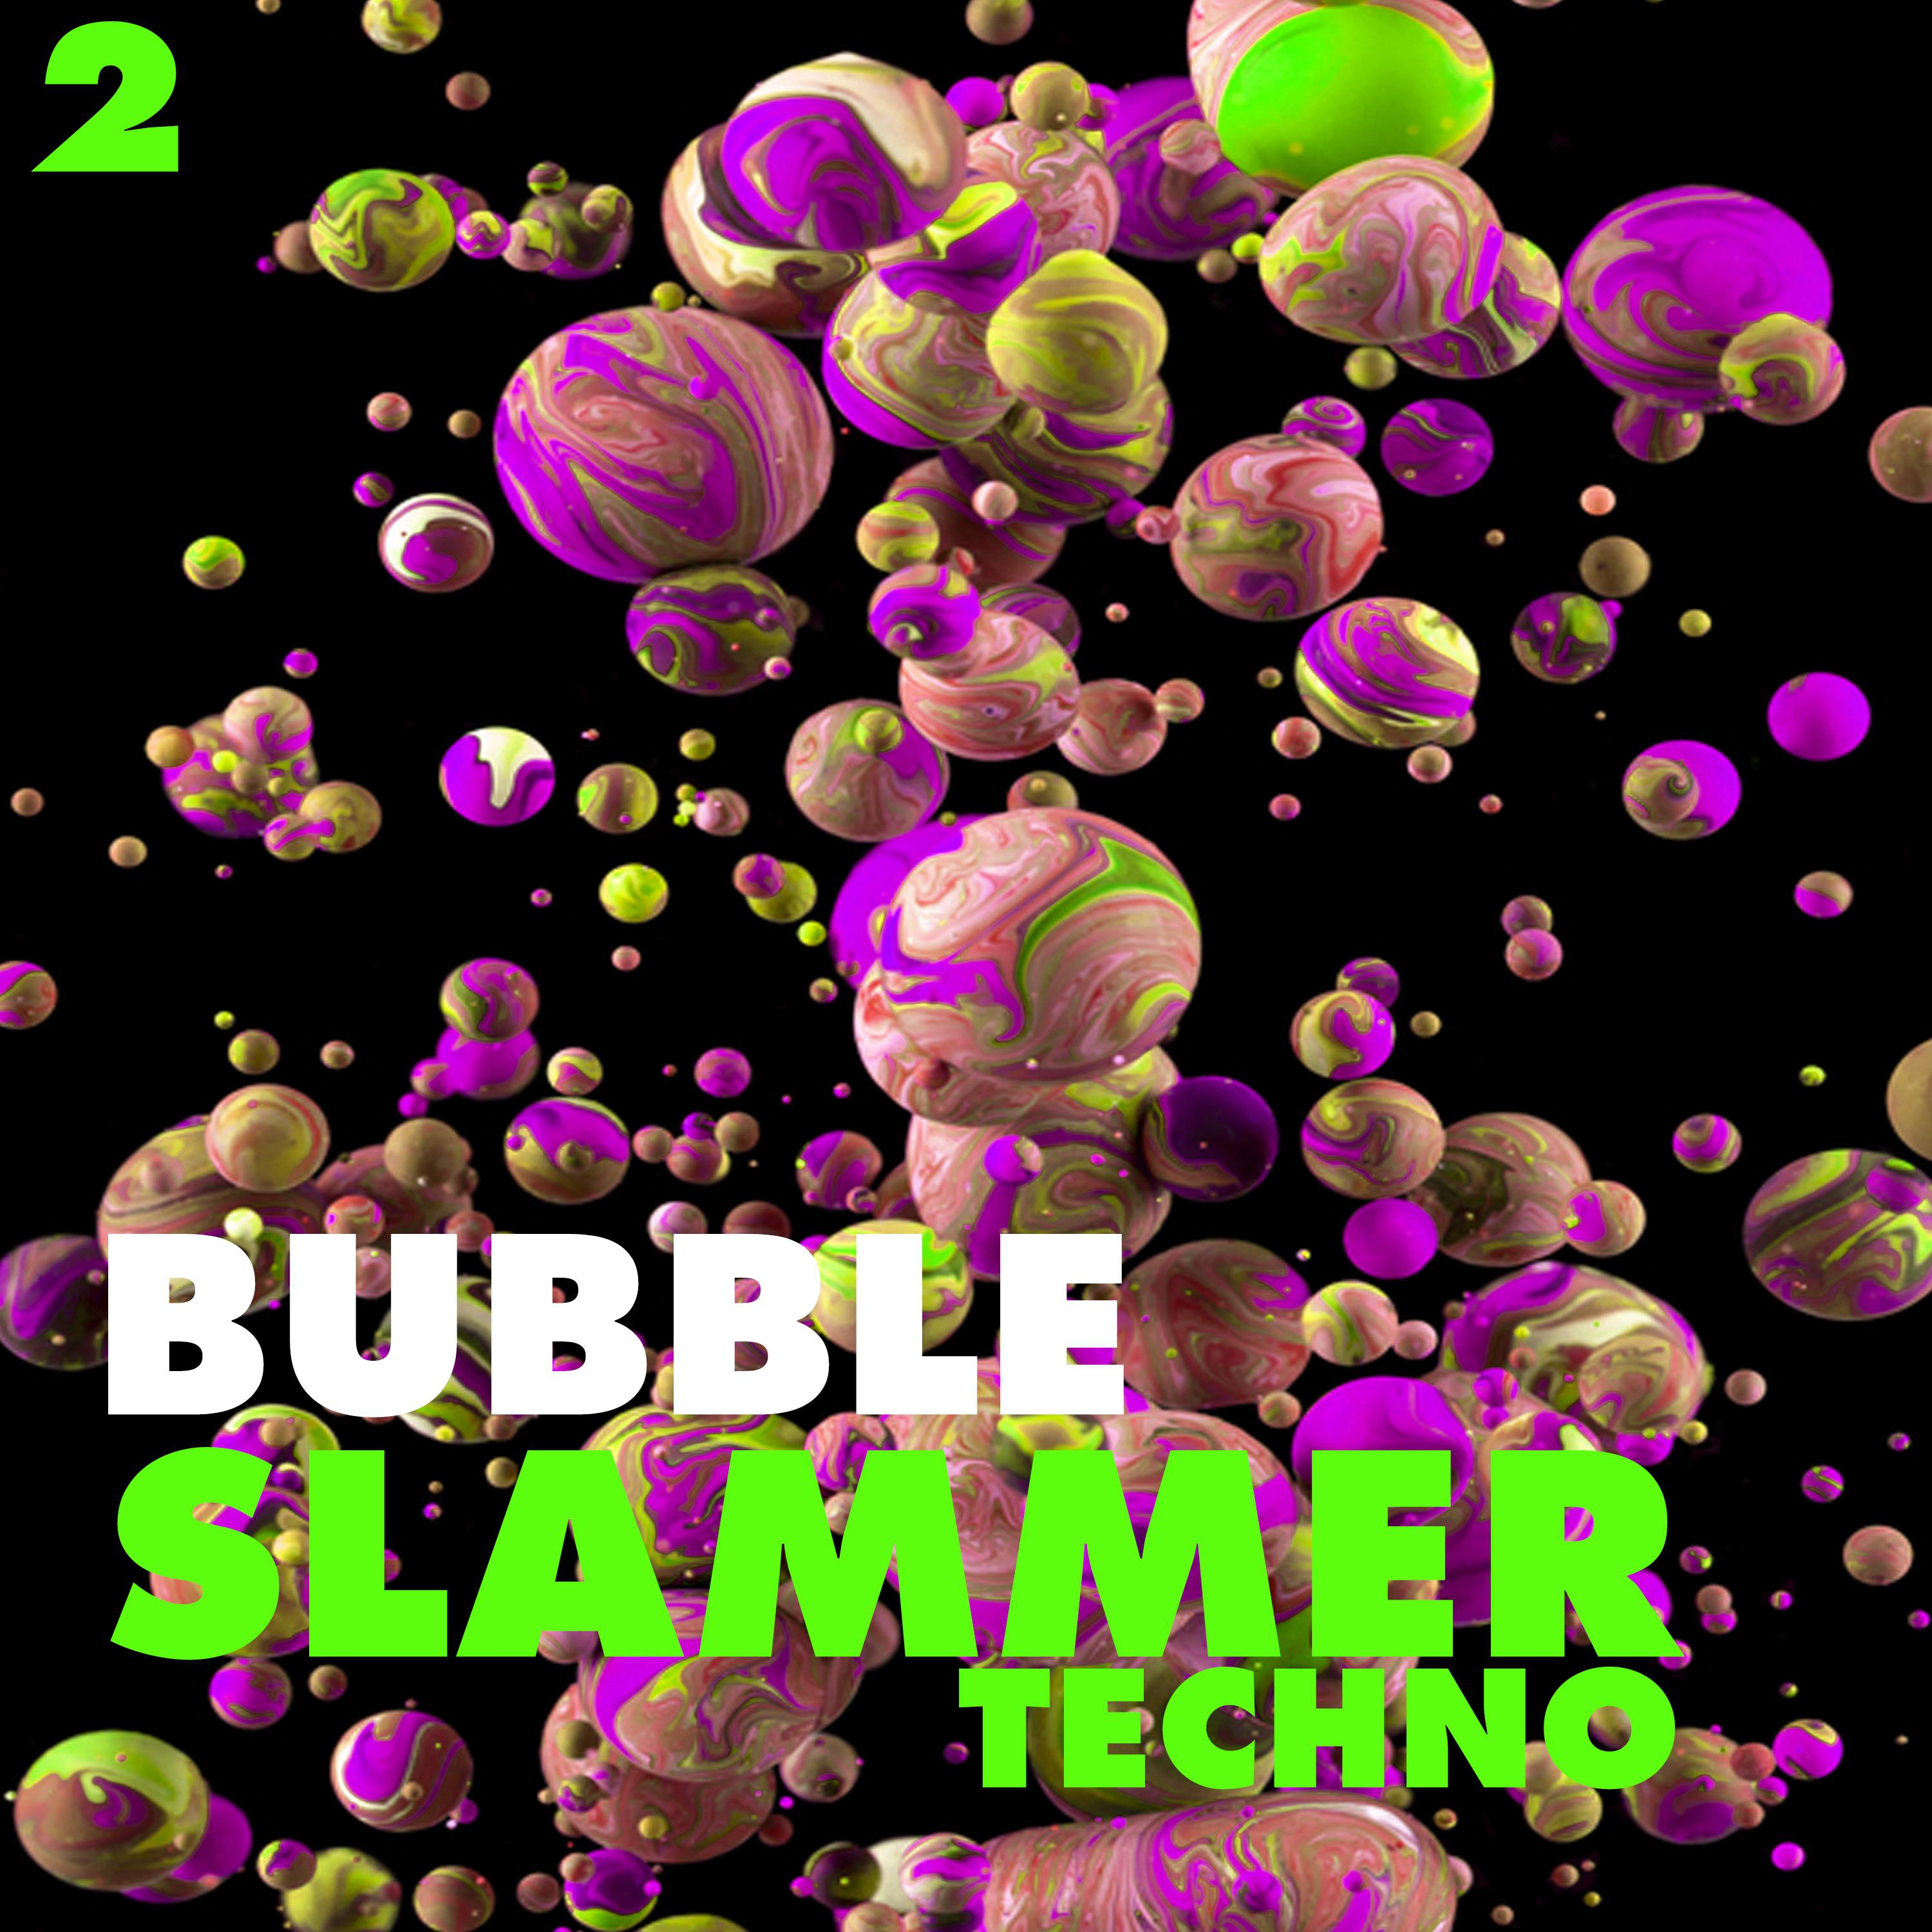 Bubble Slammers Techno, Vol. 2 - Minimal Techno